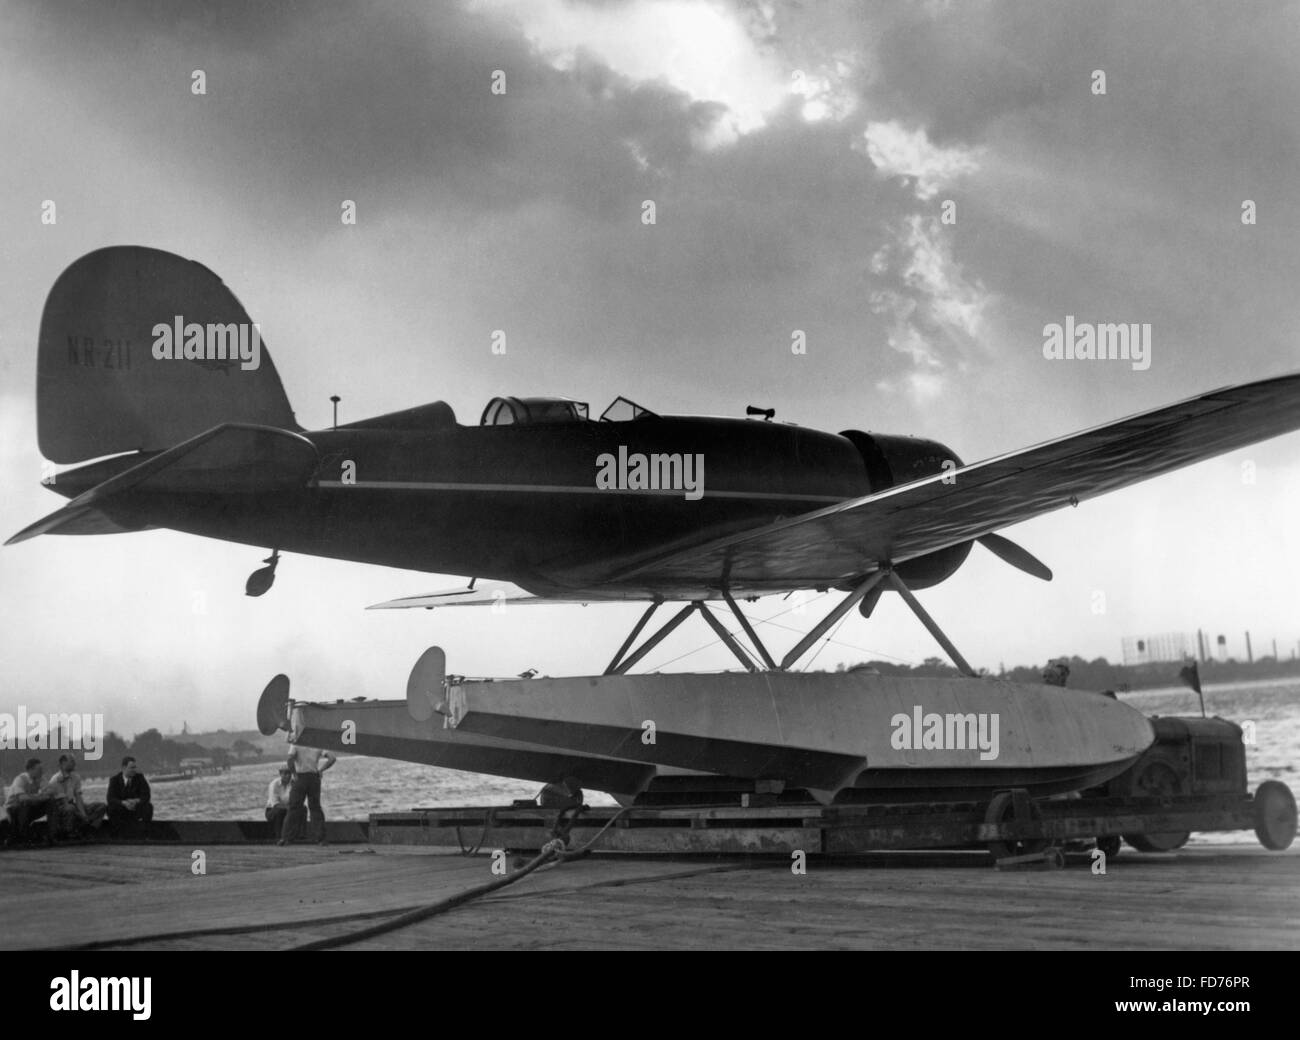 Aircraft of Charles Lindbergh, 1933 Stock Photo